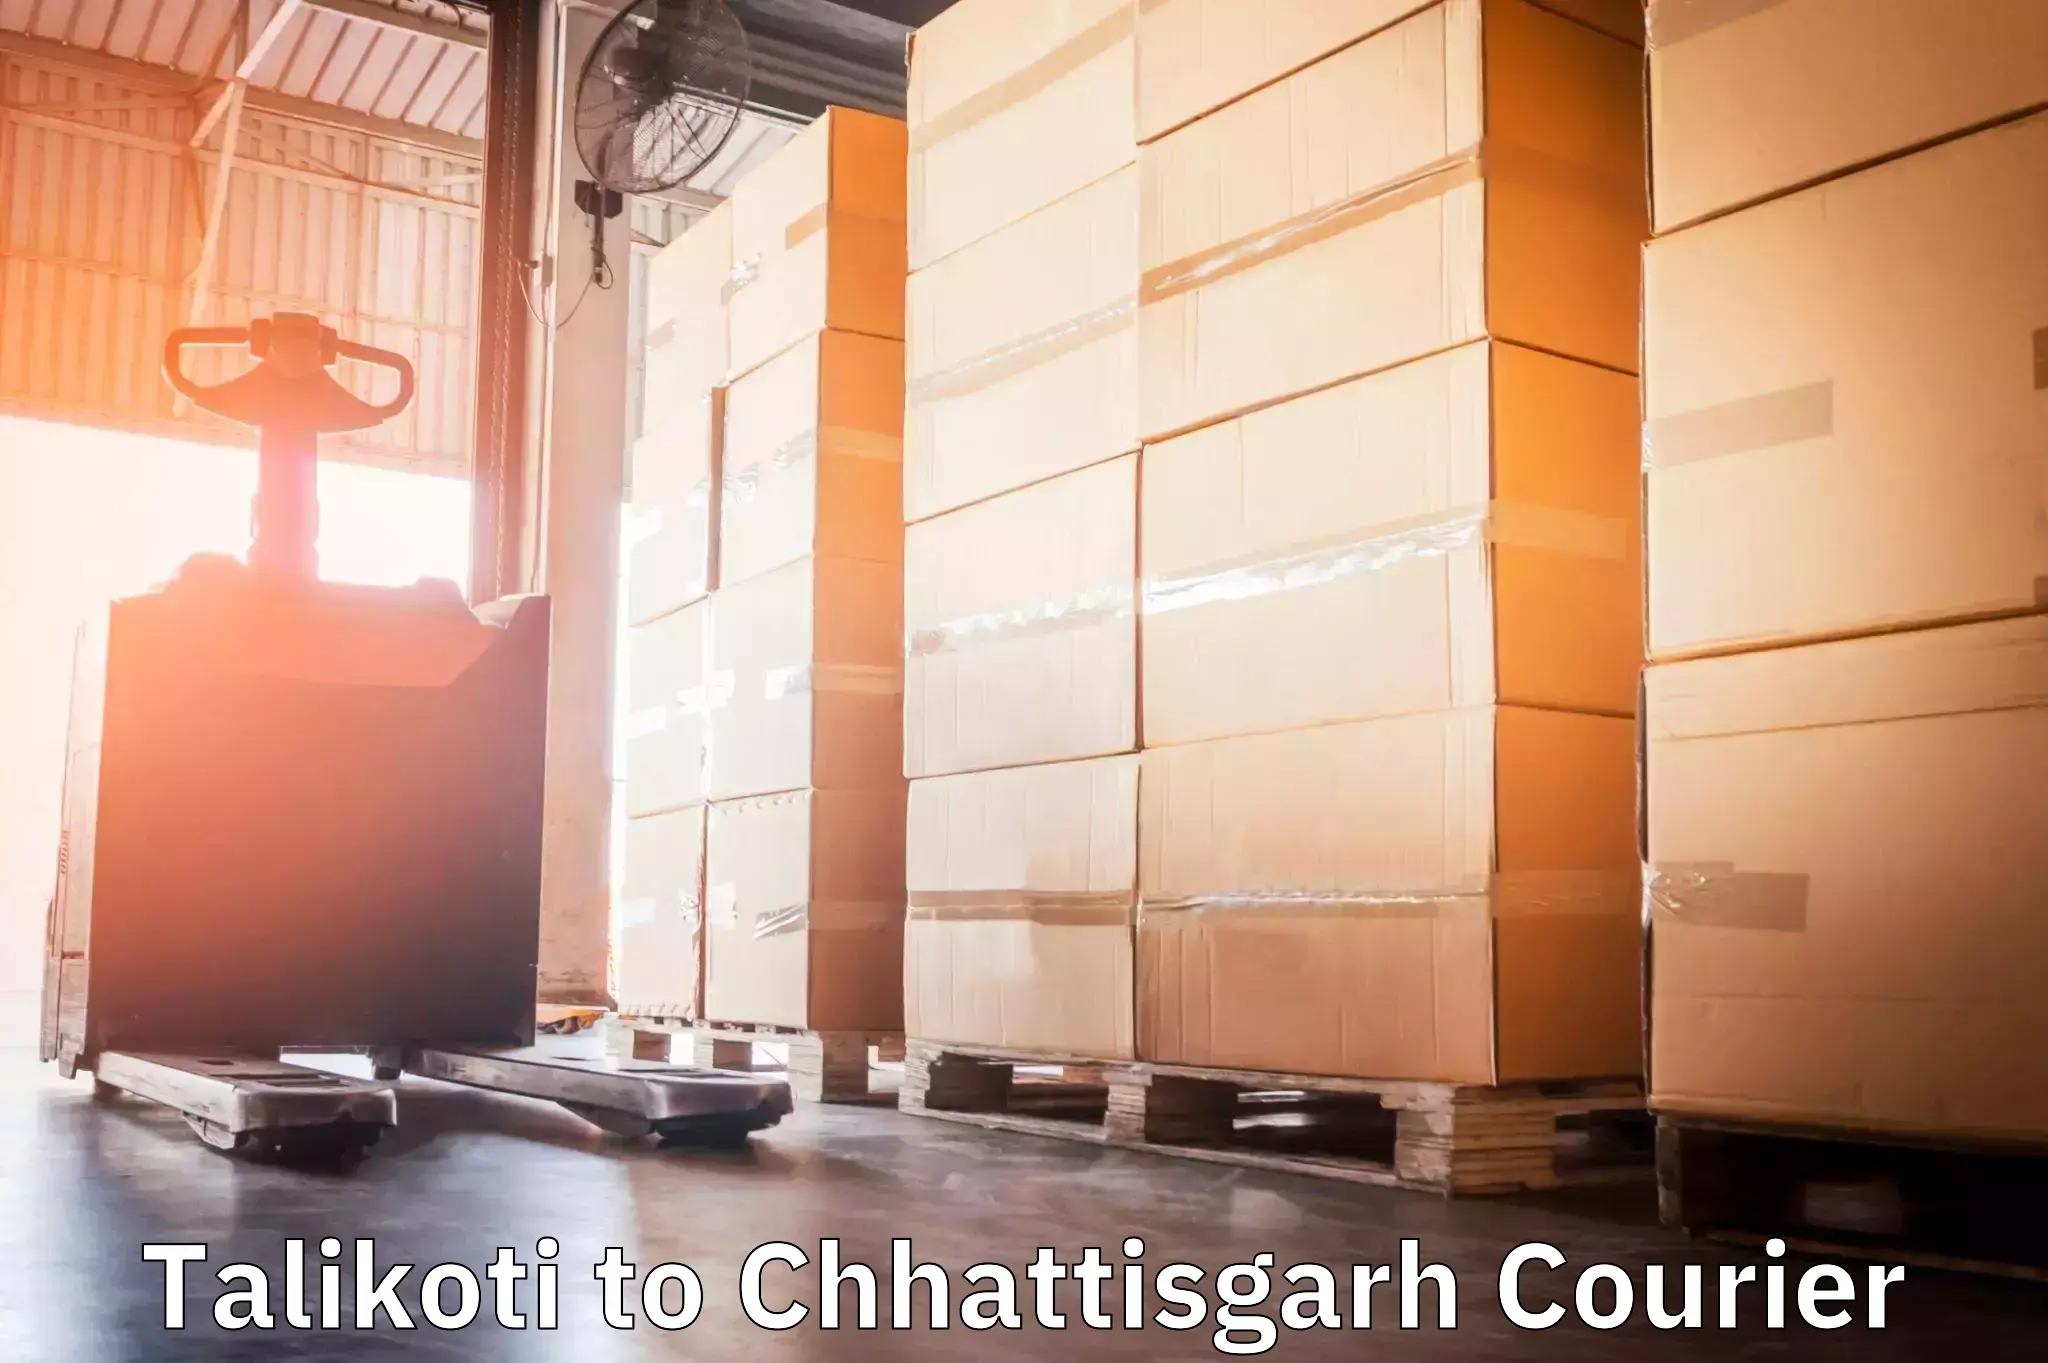 Local delivery service Talikoti to Chhattisgarh